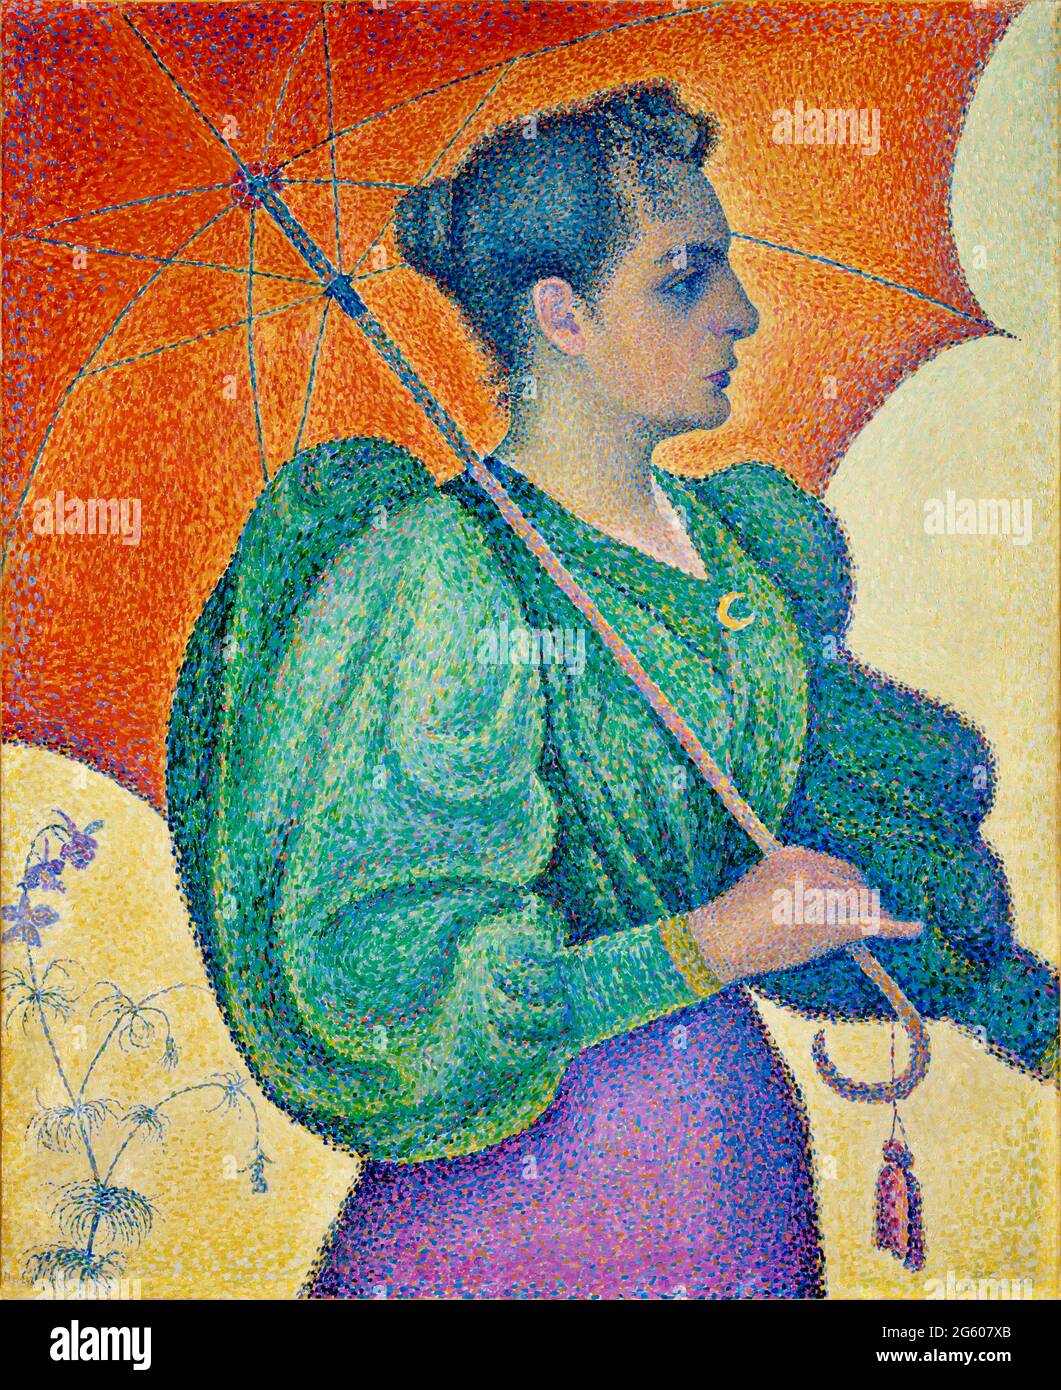 Paul Signac Kunstwerk mit dem Titel Frau mit Regenschirm. Frau in einem grünen Dach läuft mit rot orangefarbenem Regenschirm. Sie sieht so aus, als ob sie Geschäfte meint. Stockfoto